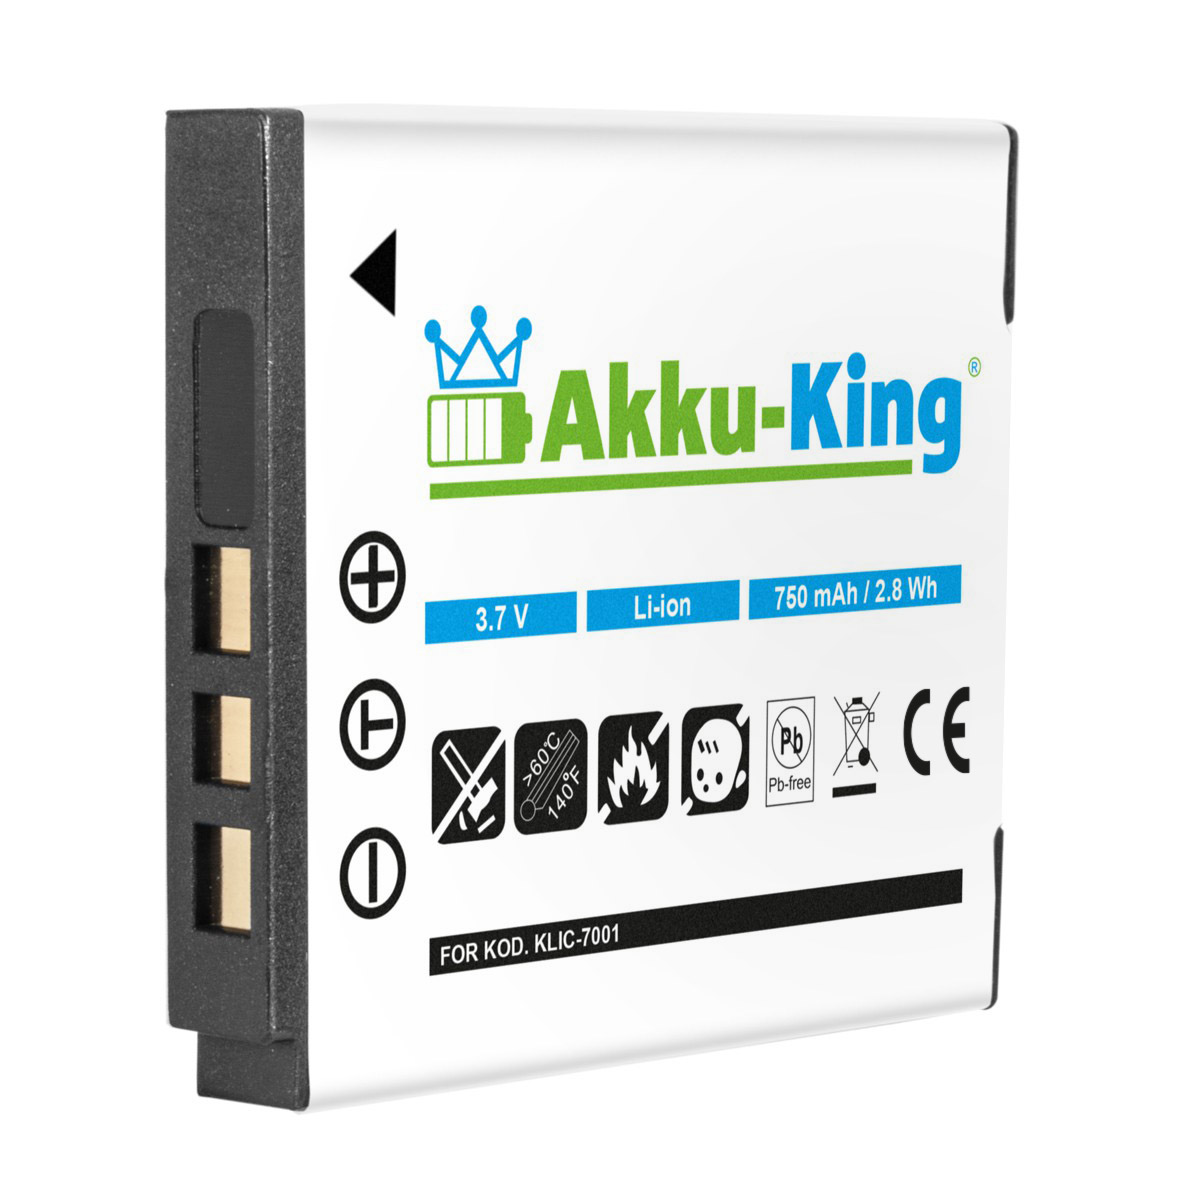 mit Klic-7001 Volt, Akku 3.7 kompatibel 750mAh Li-Ion AKKU-KING Kodak Kamera-Akku,